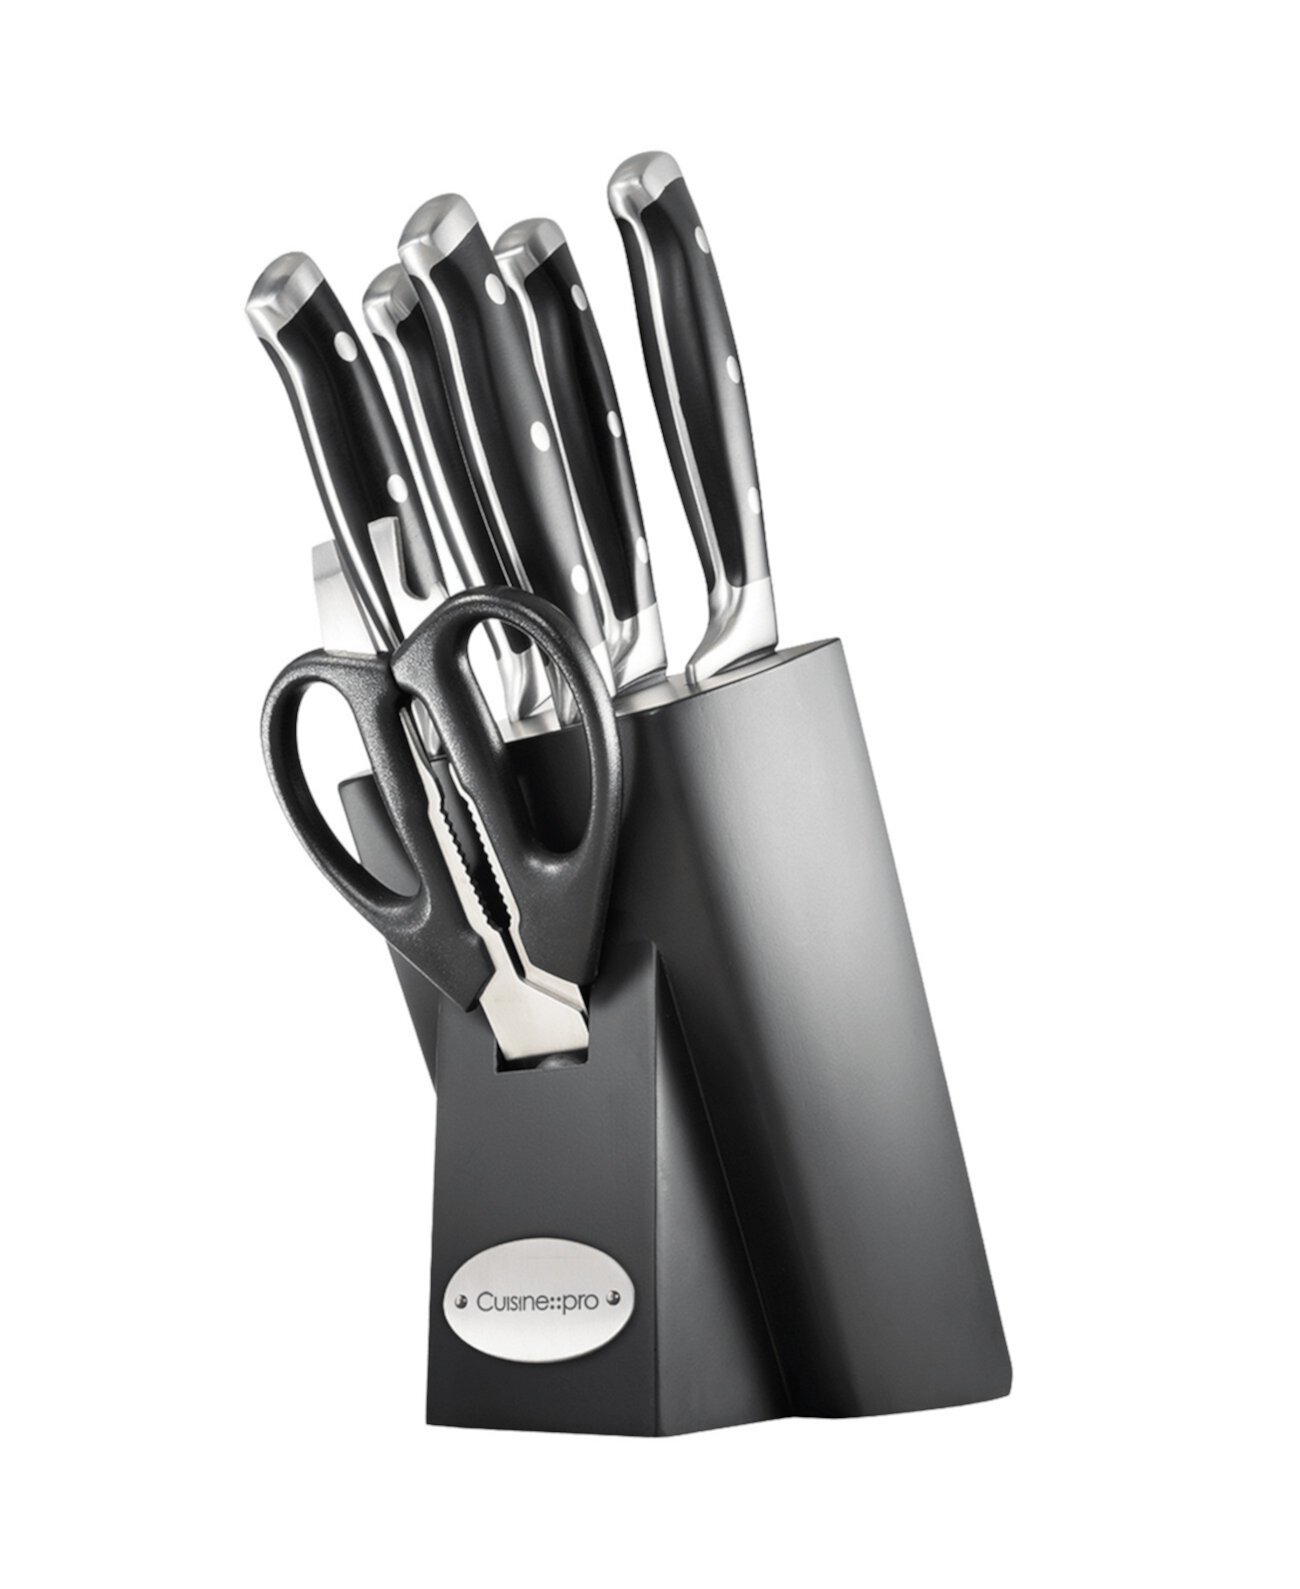 Набор блоков для ножей Artisan Finster, 7 предметов Cuisine::pro®